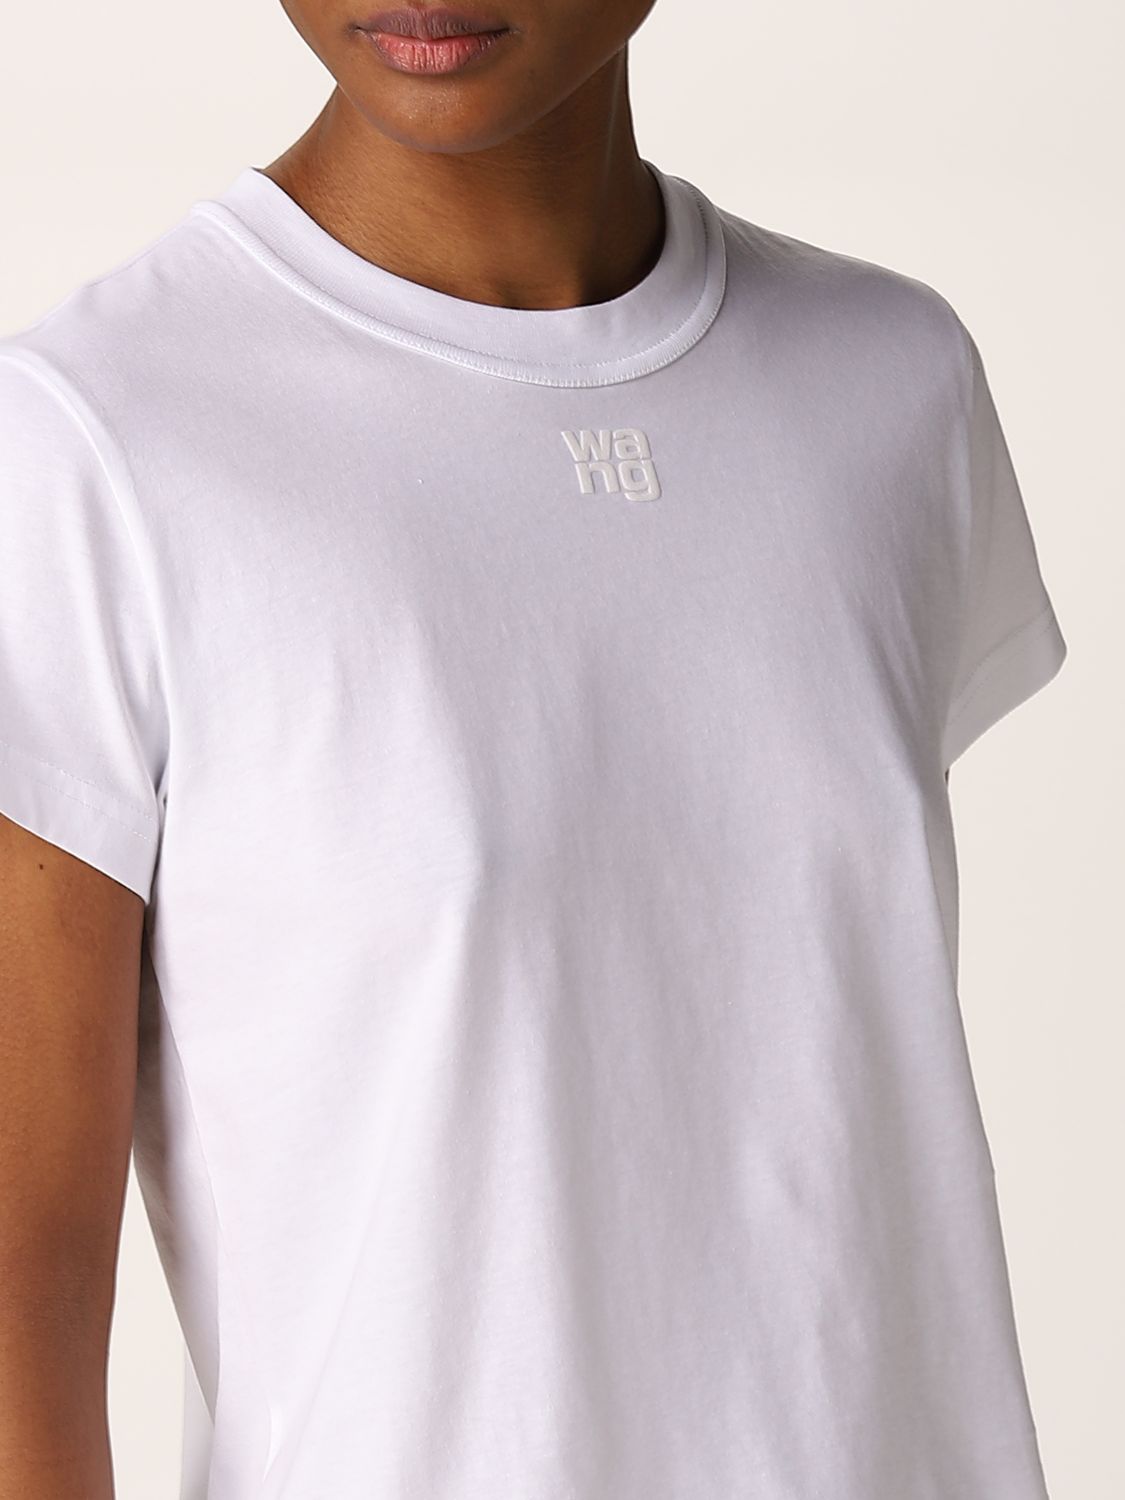 ALEXANDER WANG: Wang - logo basic at Alexander | online 4CC3211282 t-shirt White t-shirt